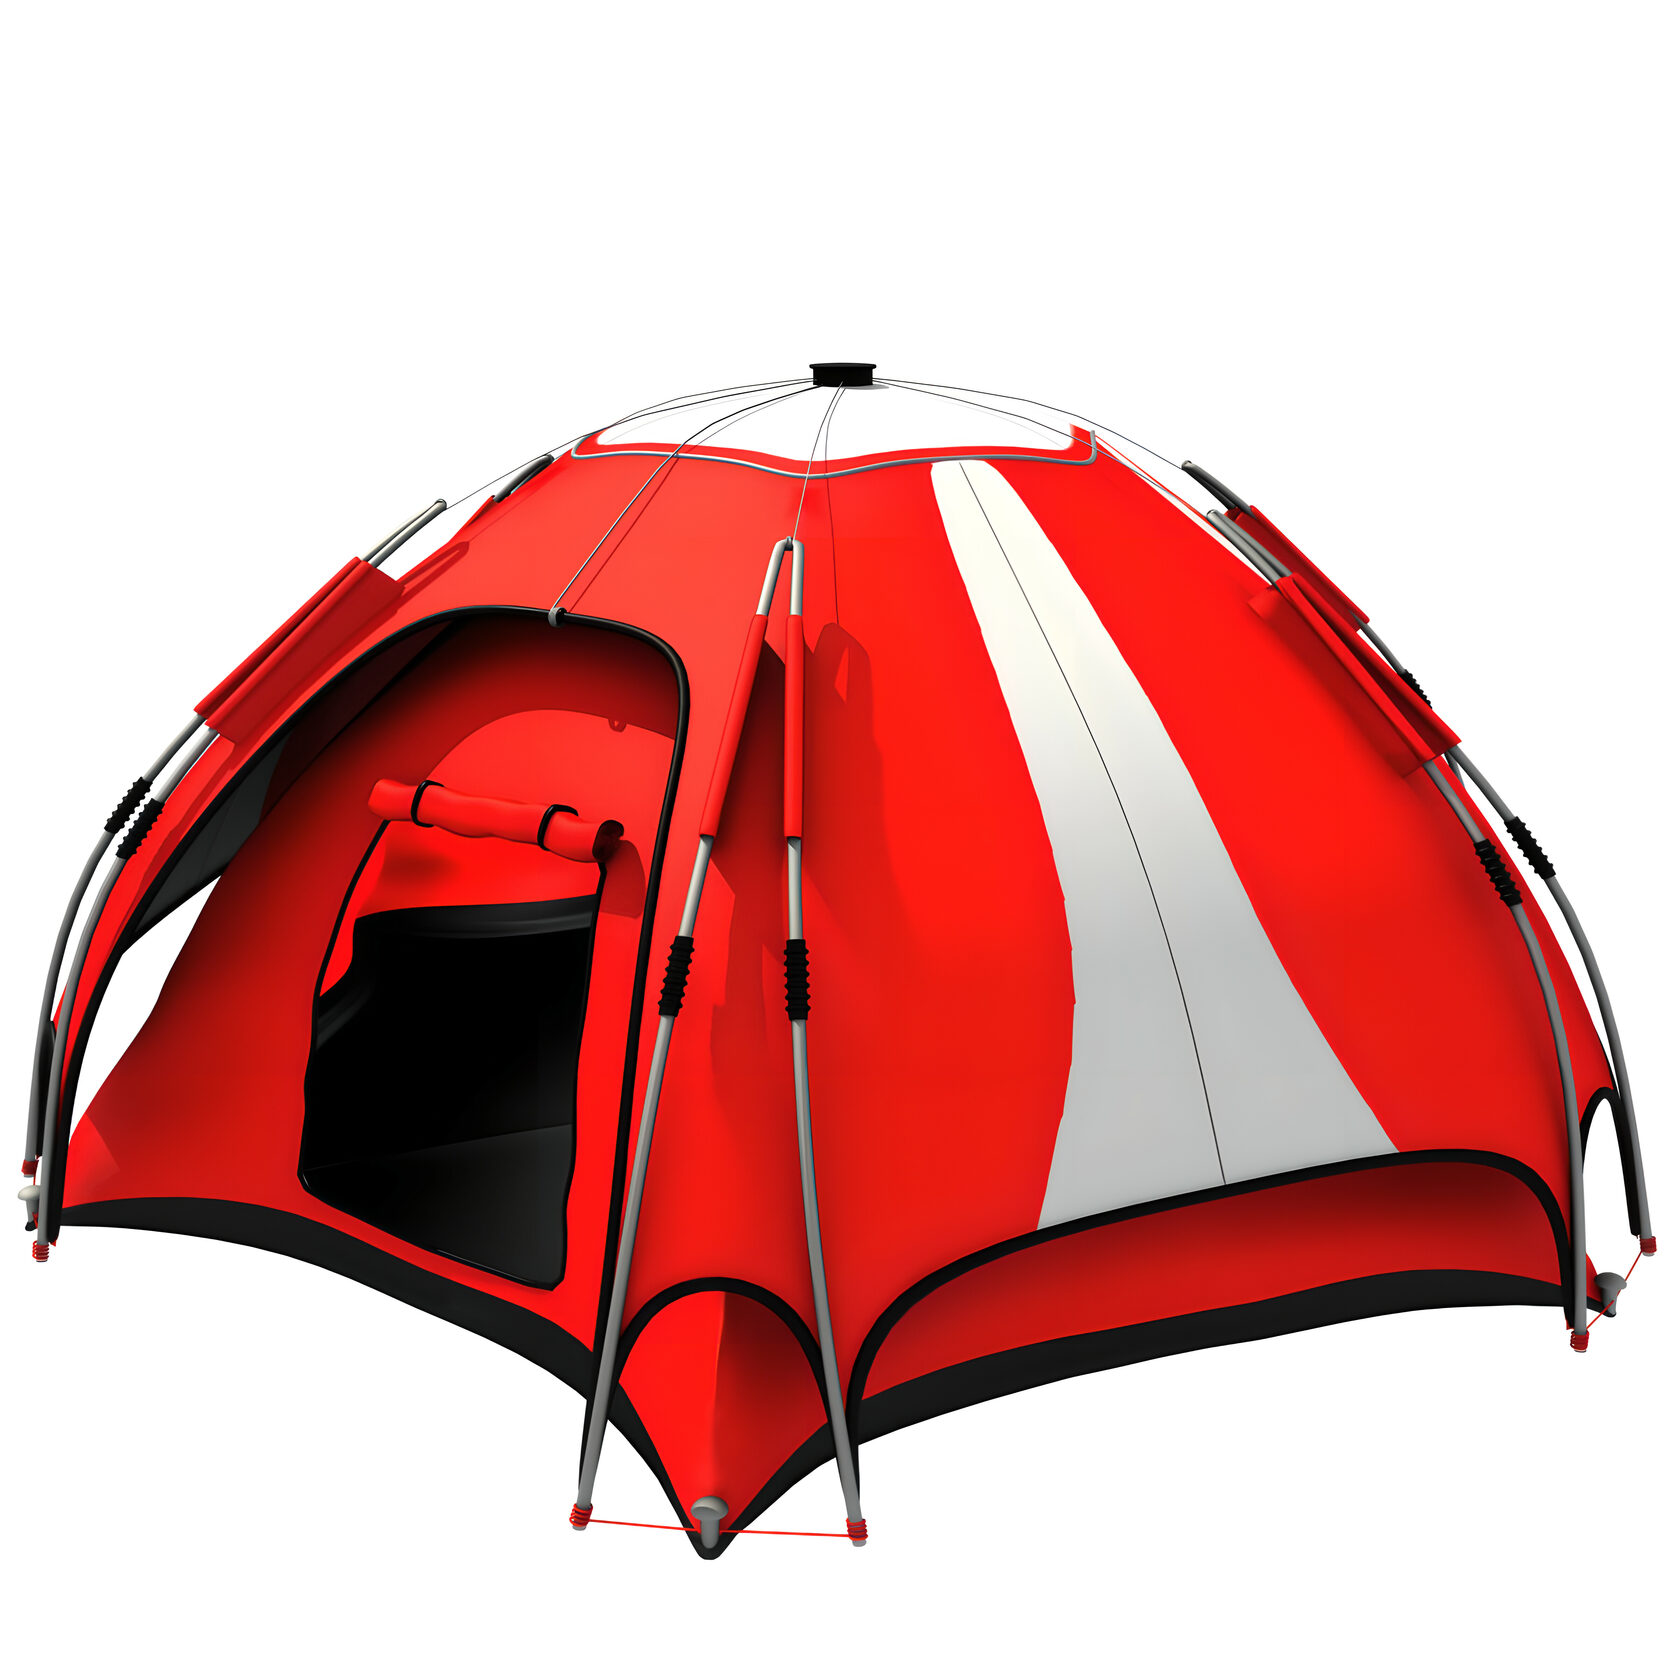 Red camp. Туристическая палатка FRT 223-3. REMIXVL палатка шатер. Палатка Теслин 2. Палатка jtlt020tn.